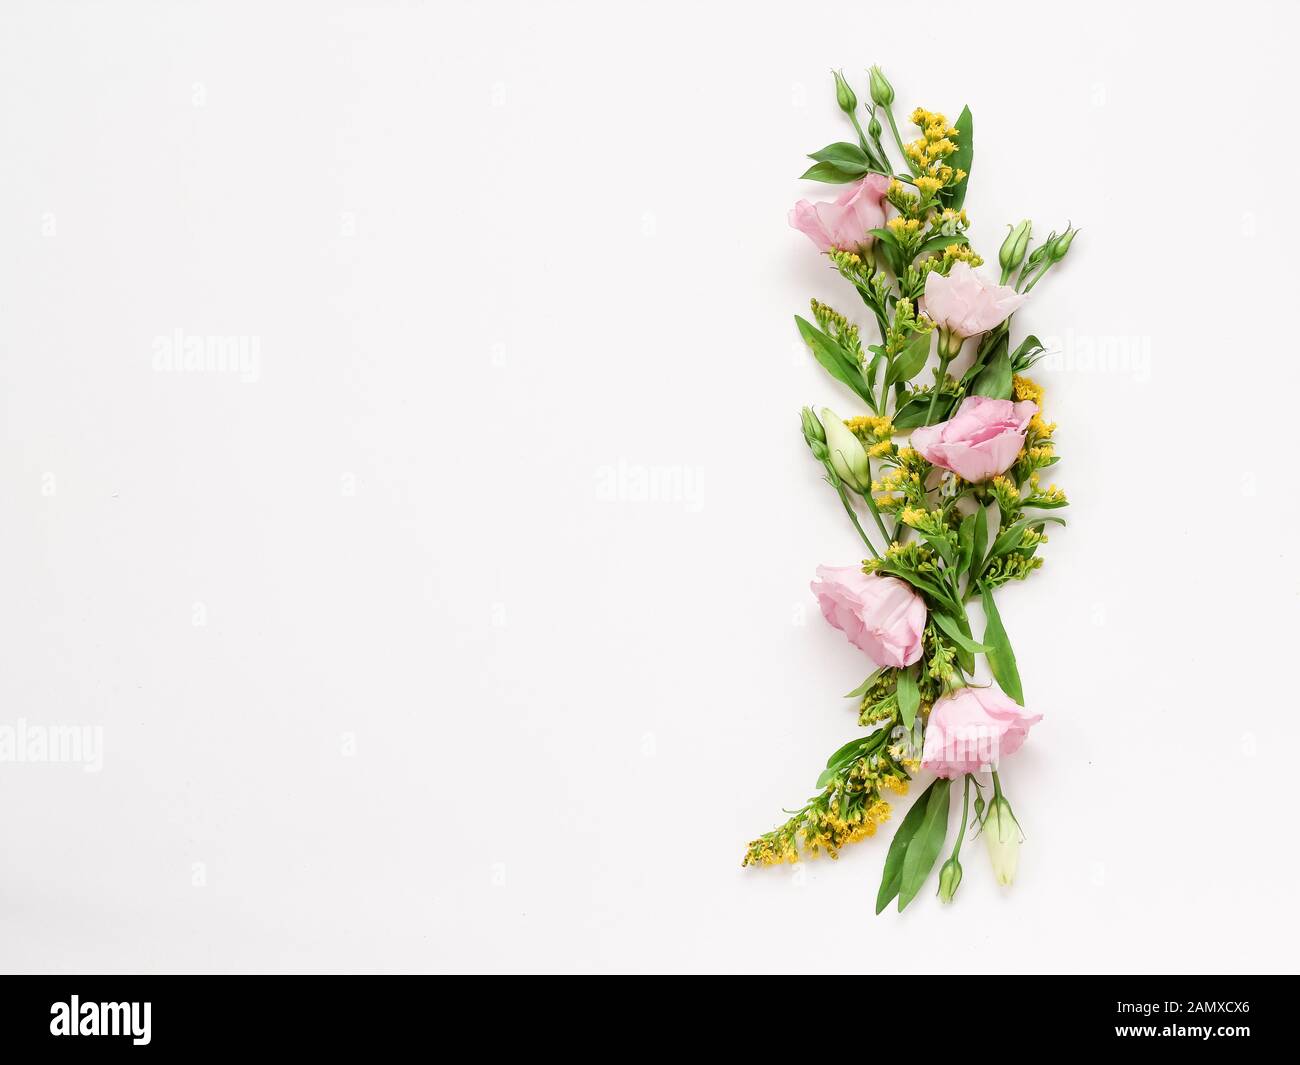 Bordo floreale con fiori rosa e giallo su sfondo bianco con spazio copia. Utilizzare per gli inviti, i messaggi di saluto Foto Stock